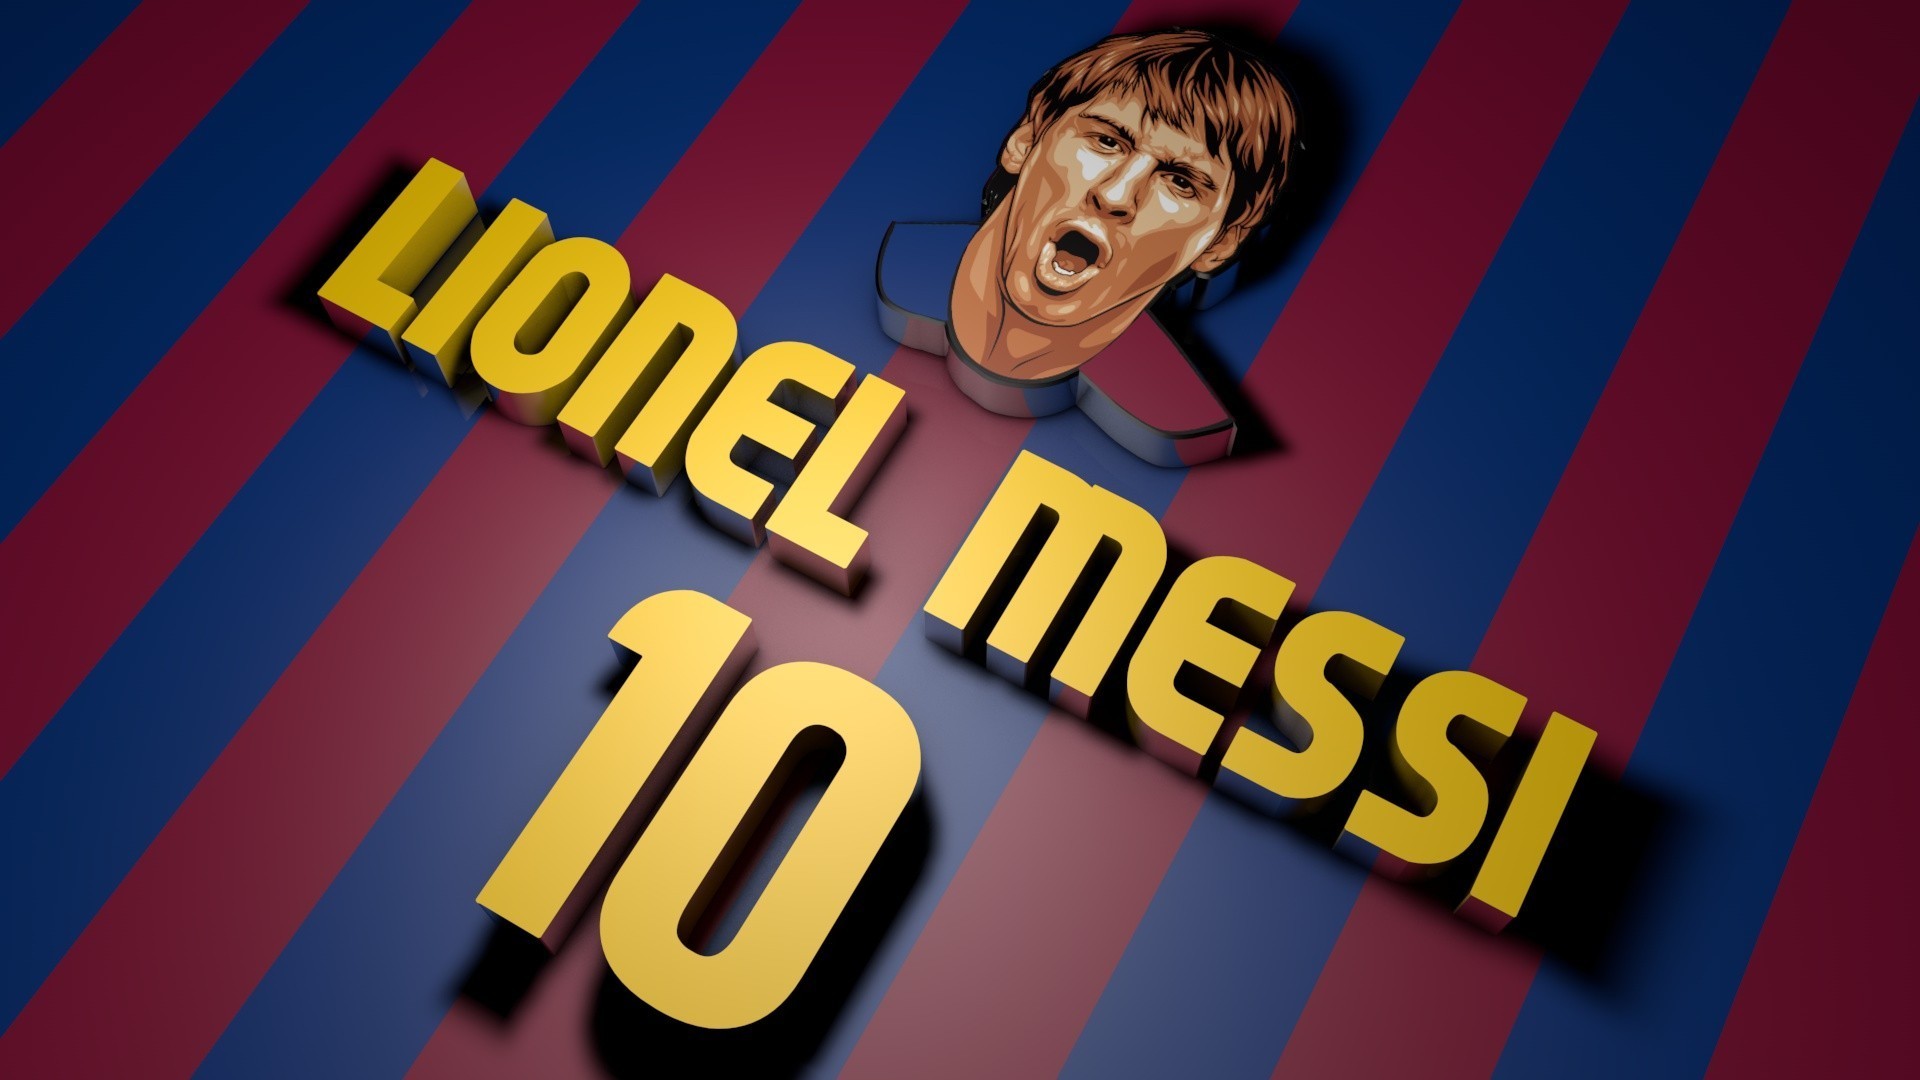 Hình nền Messi 2018 đẹp nhất